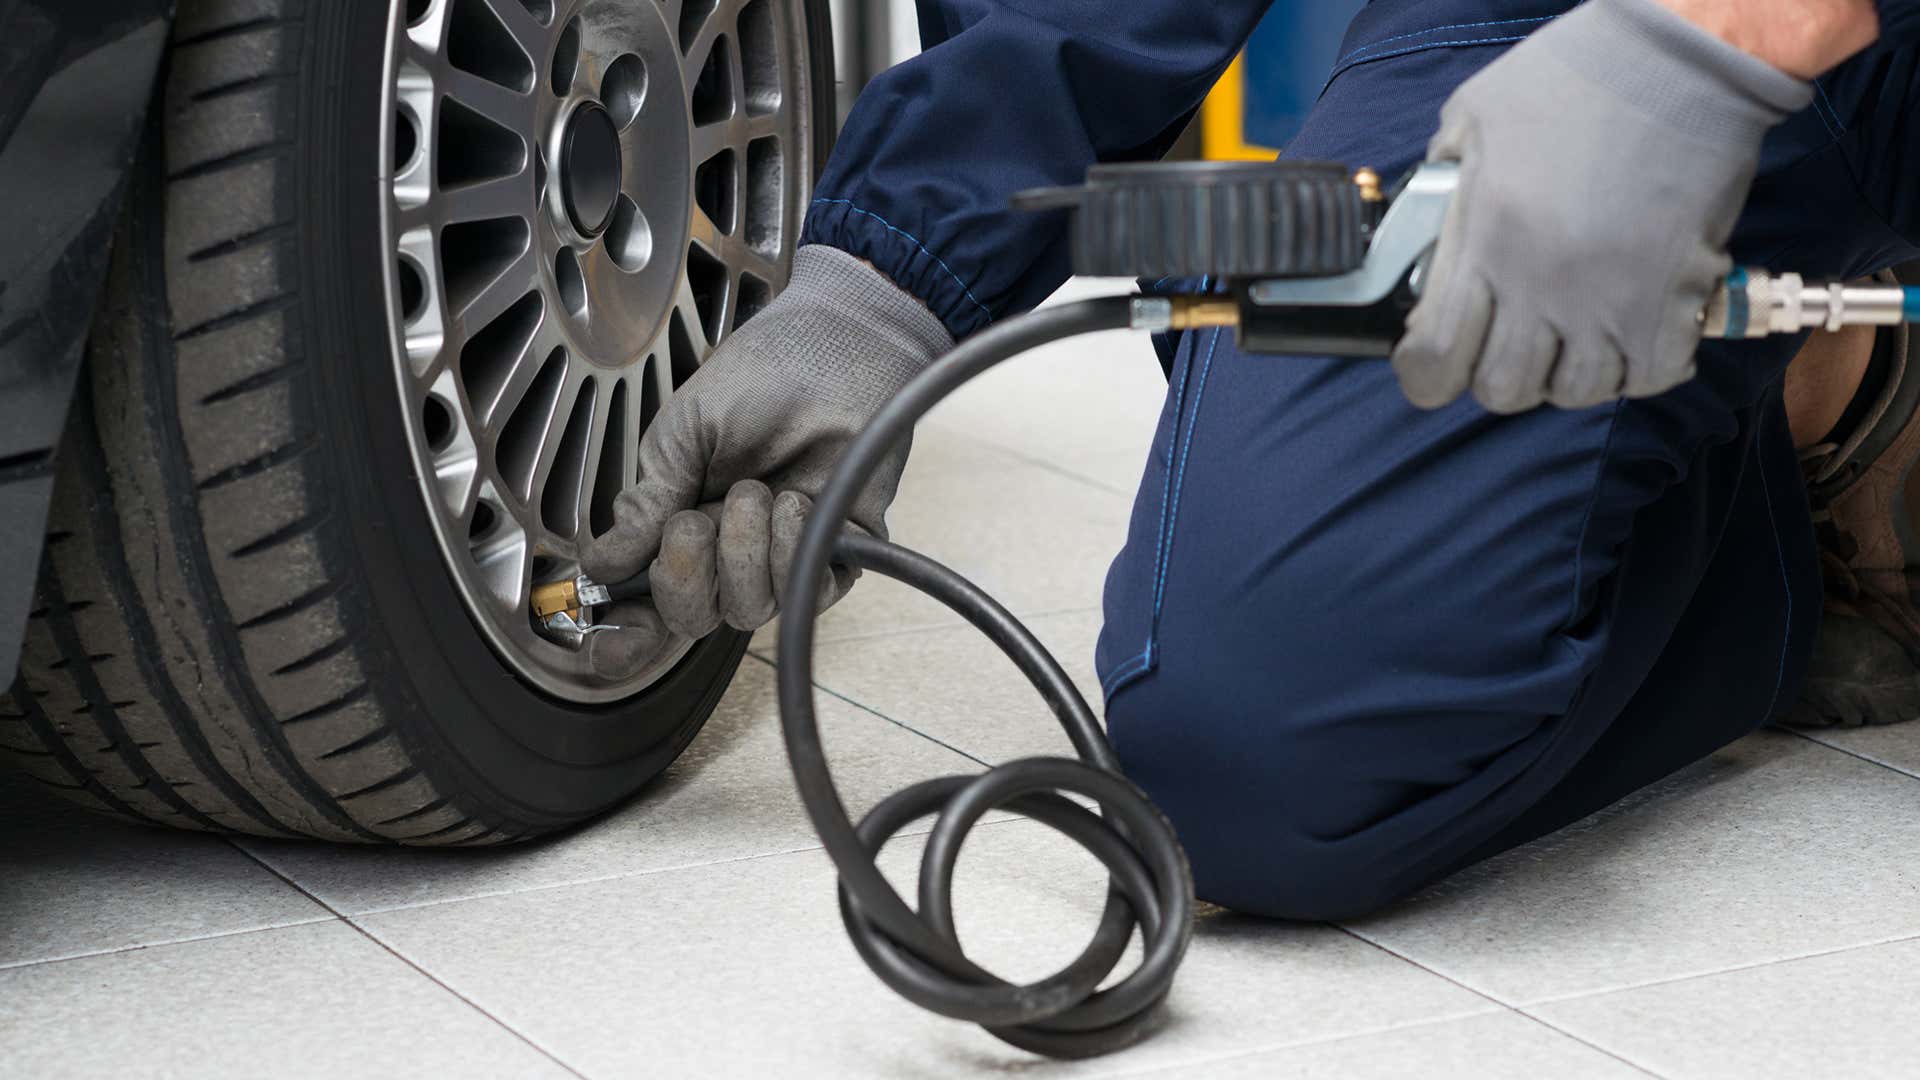 每周至少检查一次轮胎的气压是很重要的。